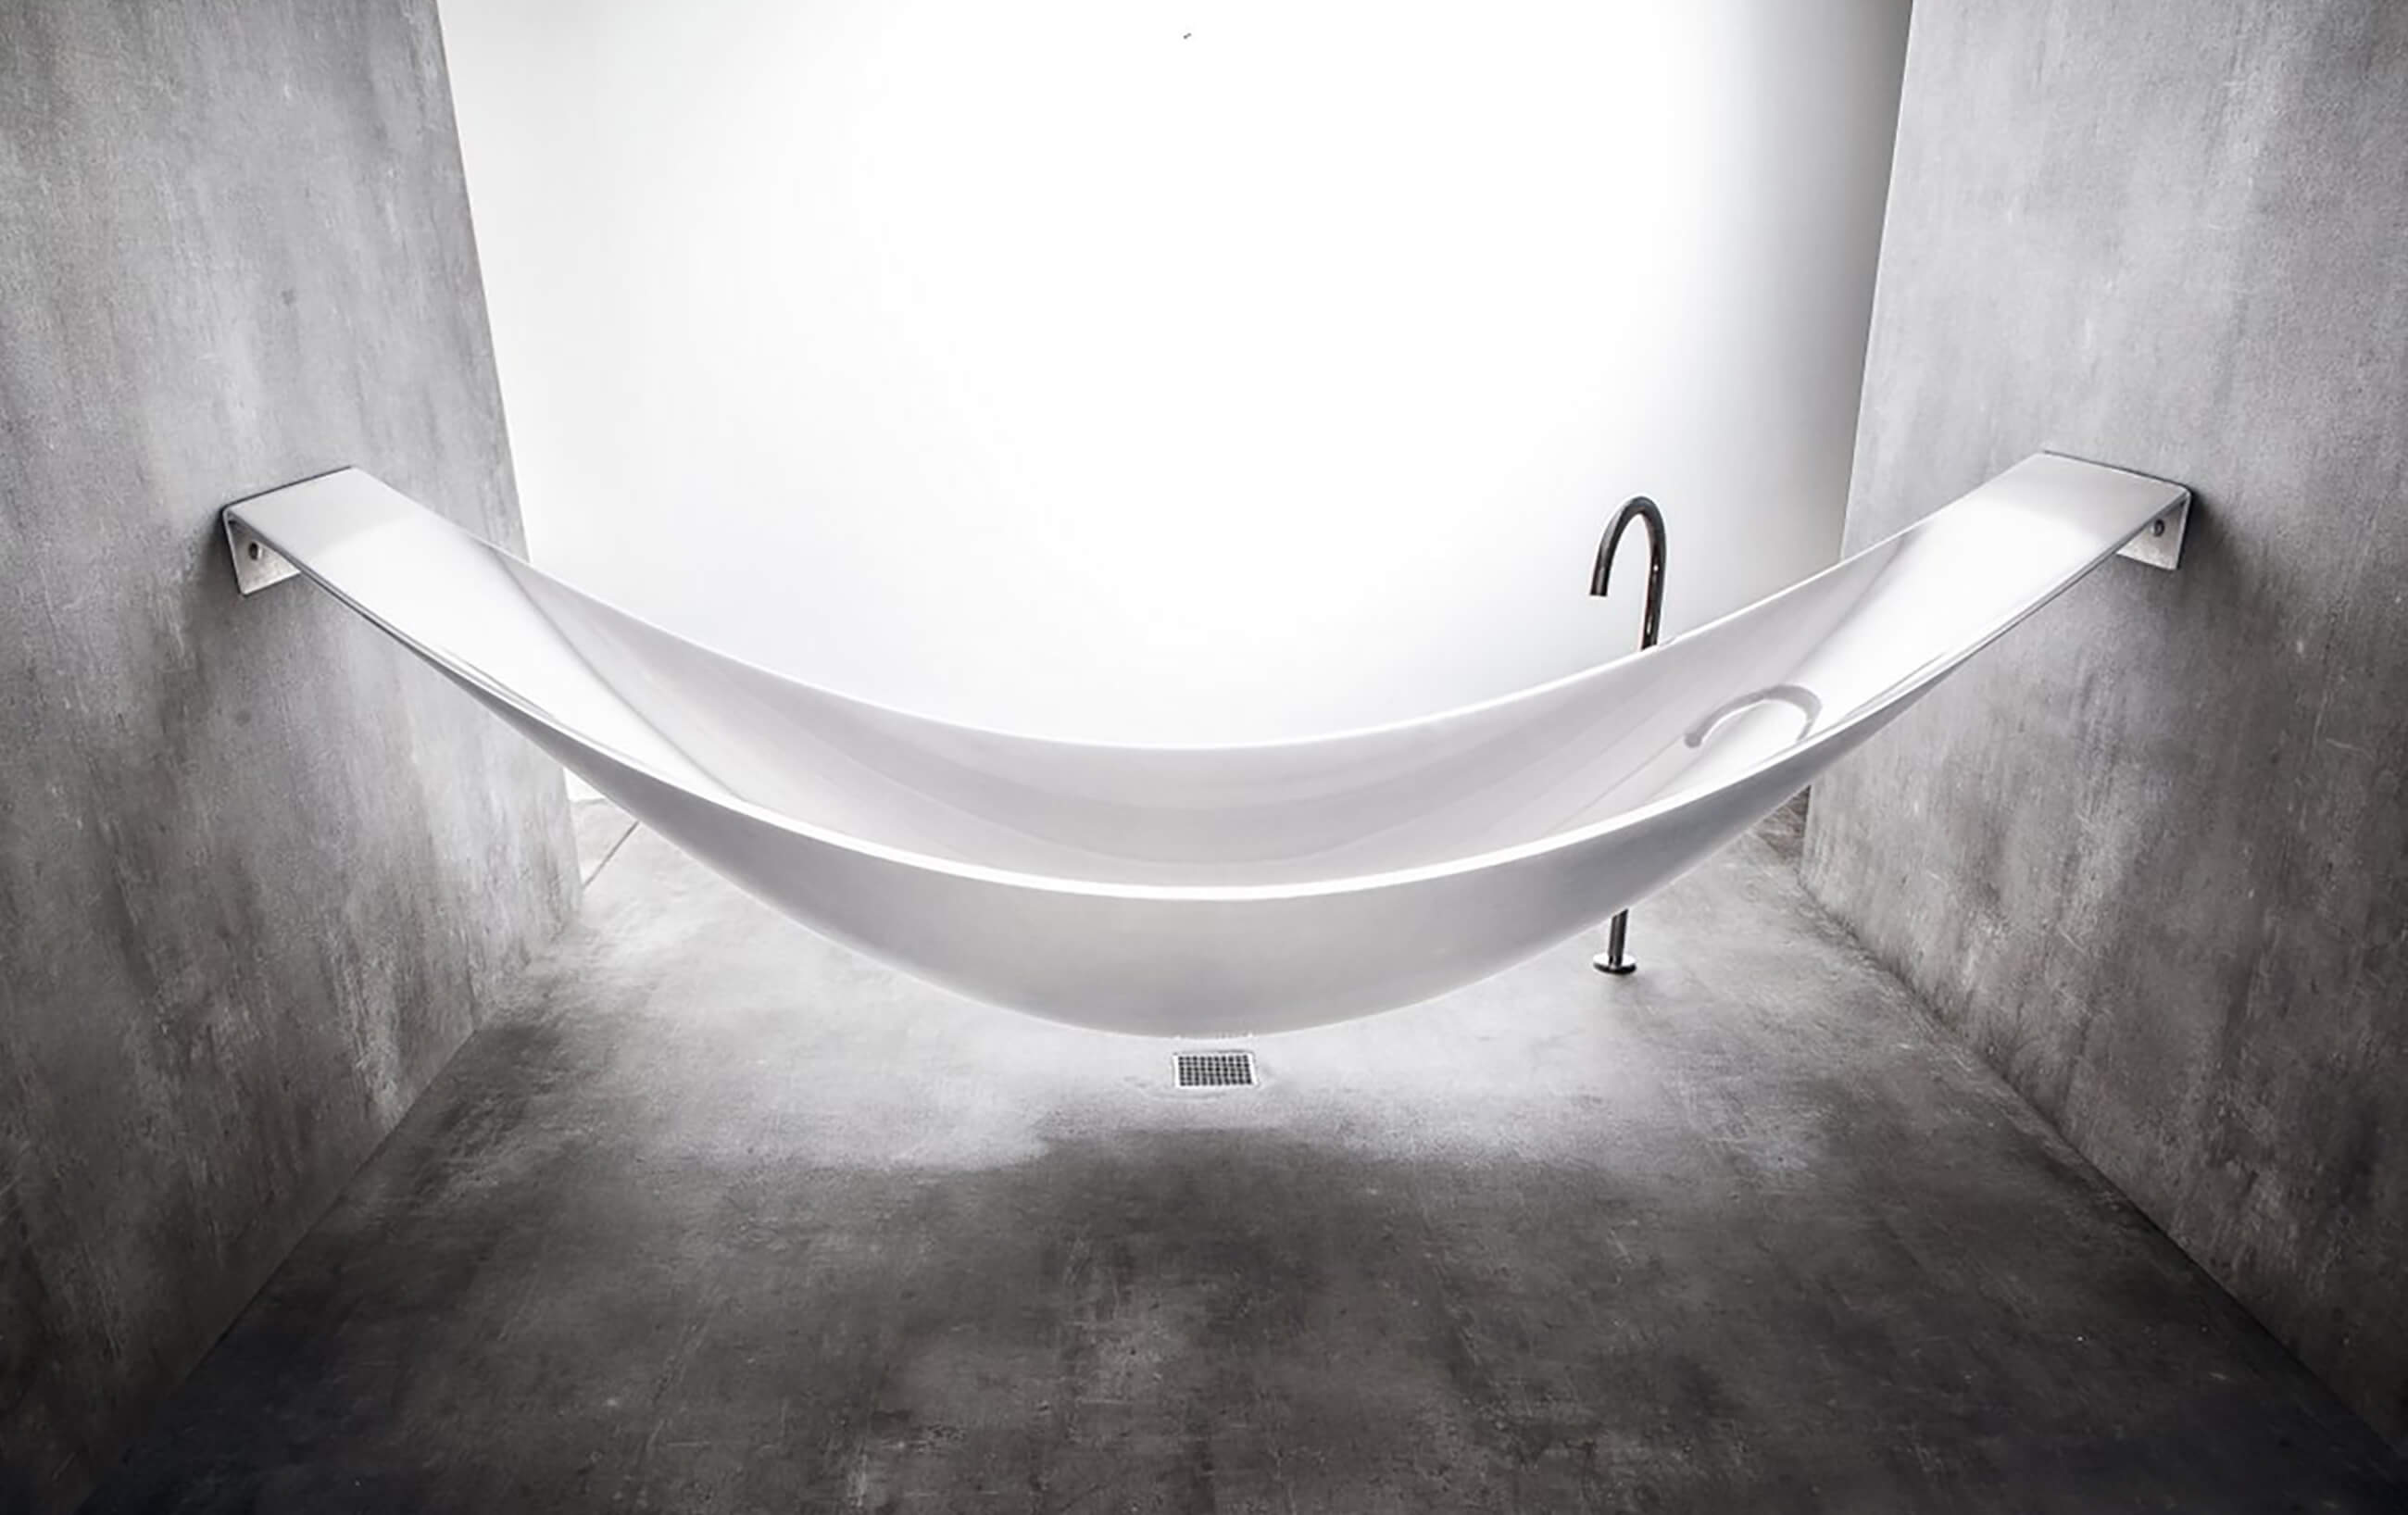 Hammock Bath Tub In Carbon Fibre, Splinter Works Hammock Bathtub